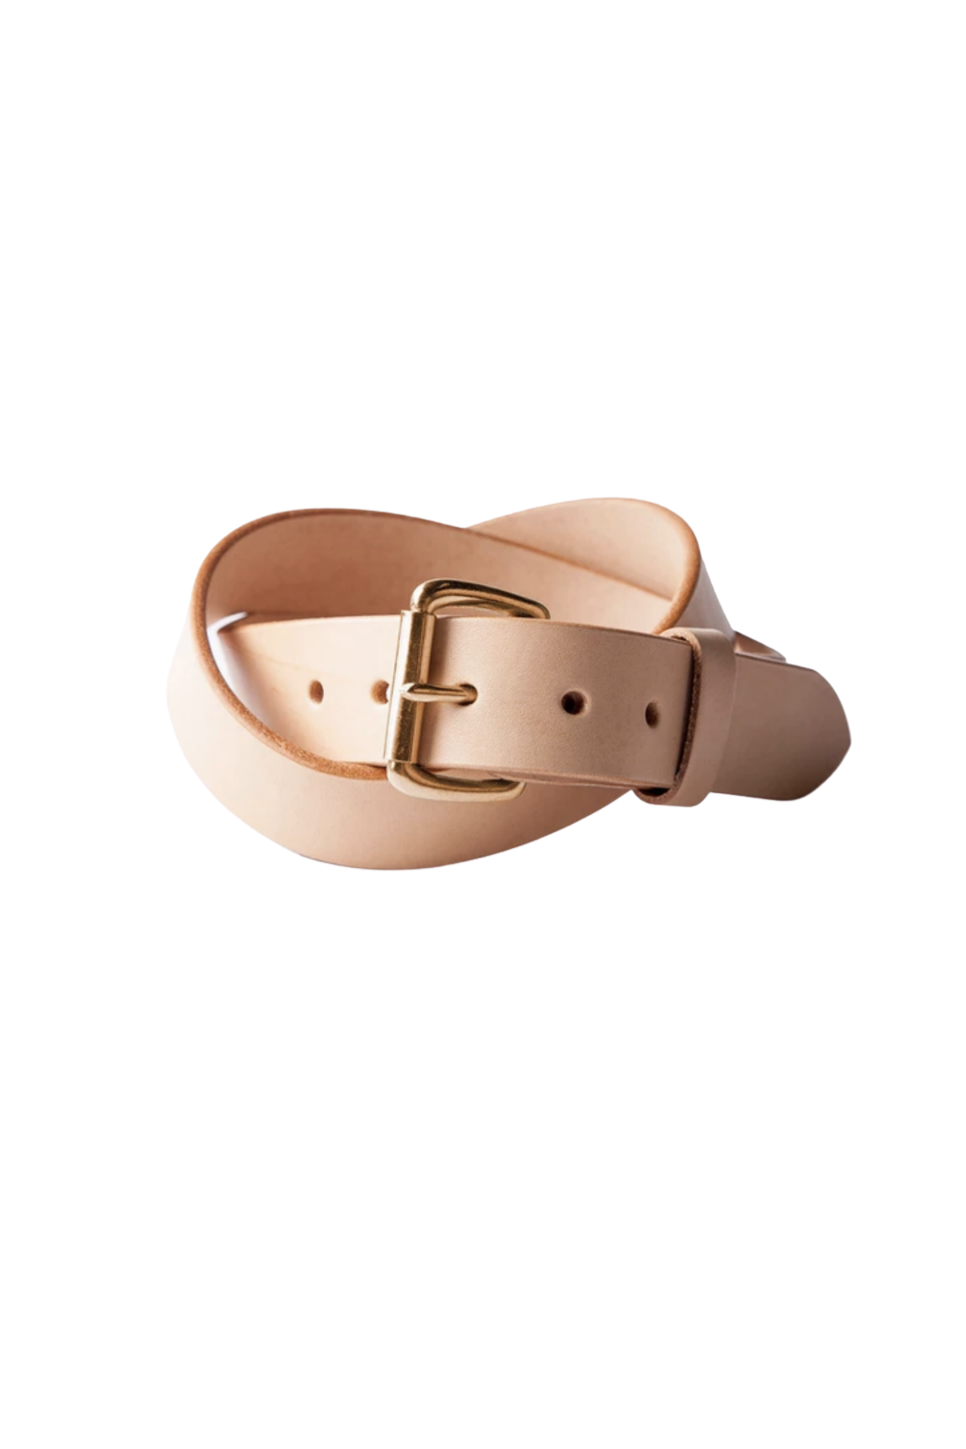 Tanner Goods - Standard Belt - Natural/Copper